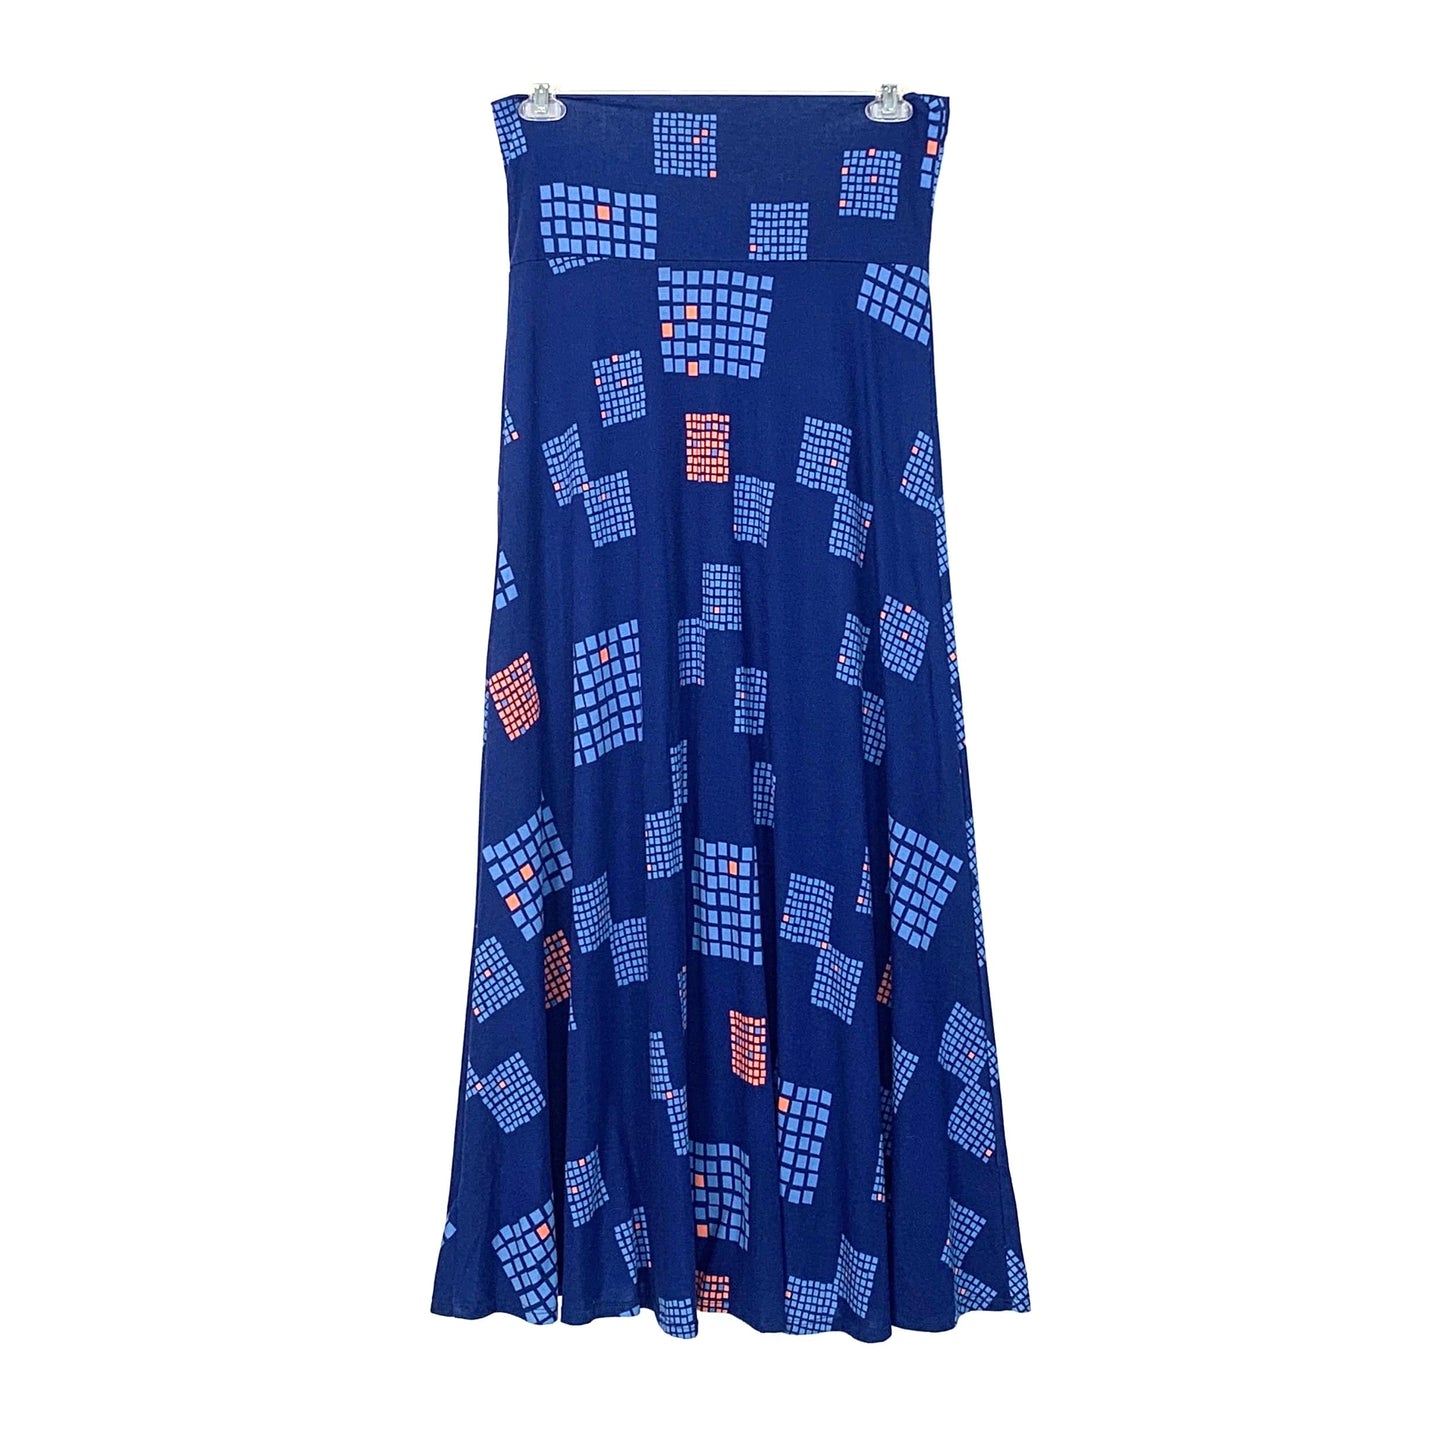 LulaRoe Womens Size M Blue Long Skirt Geometric Pattern